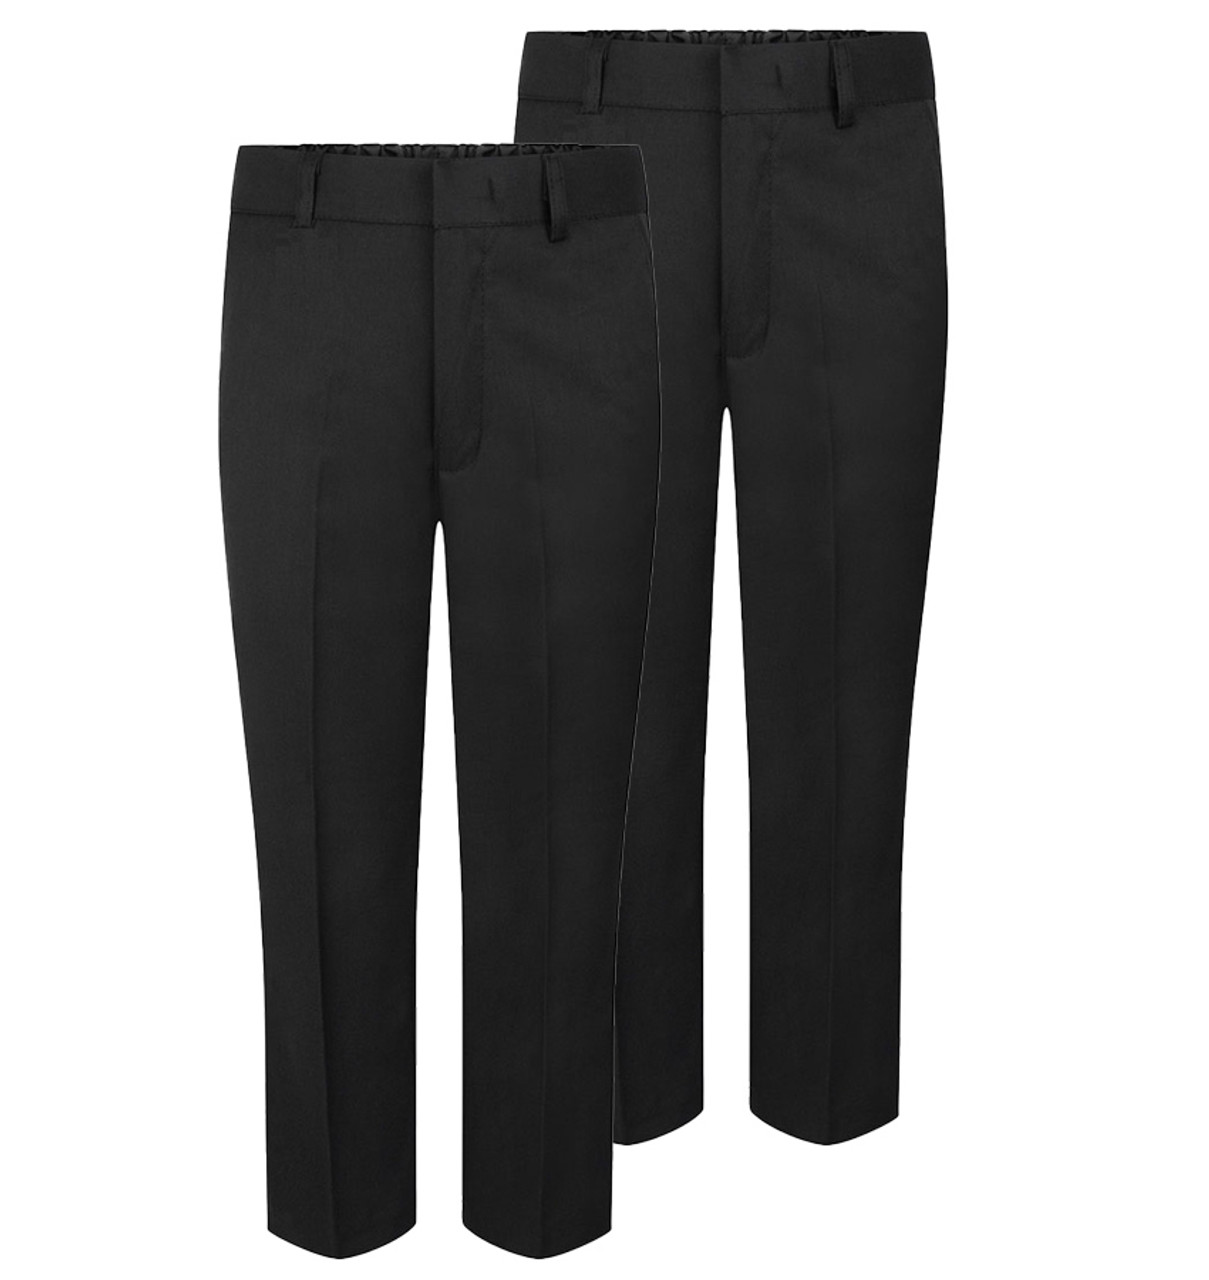 Top 64+ grey pants school uniform super hot - in.eteachers